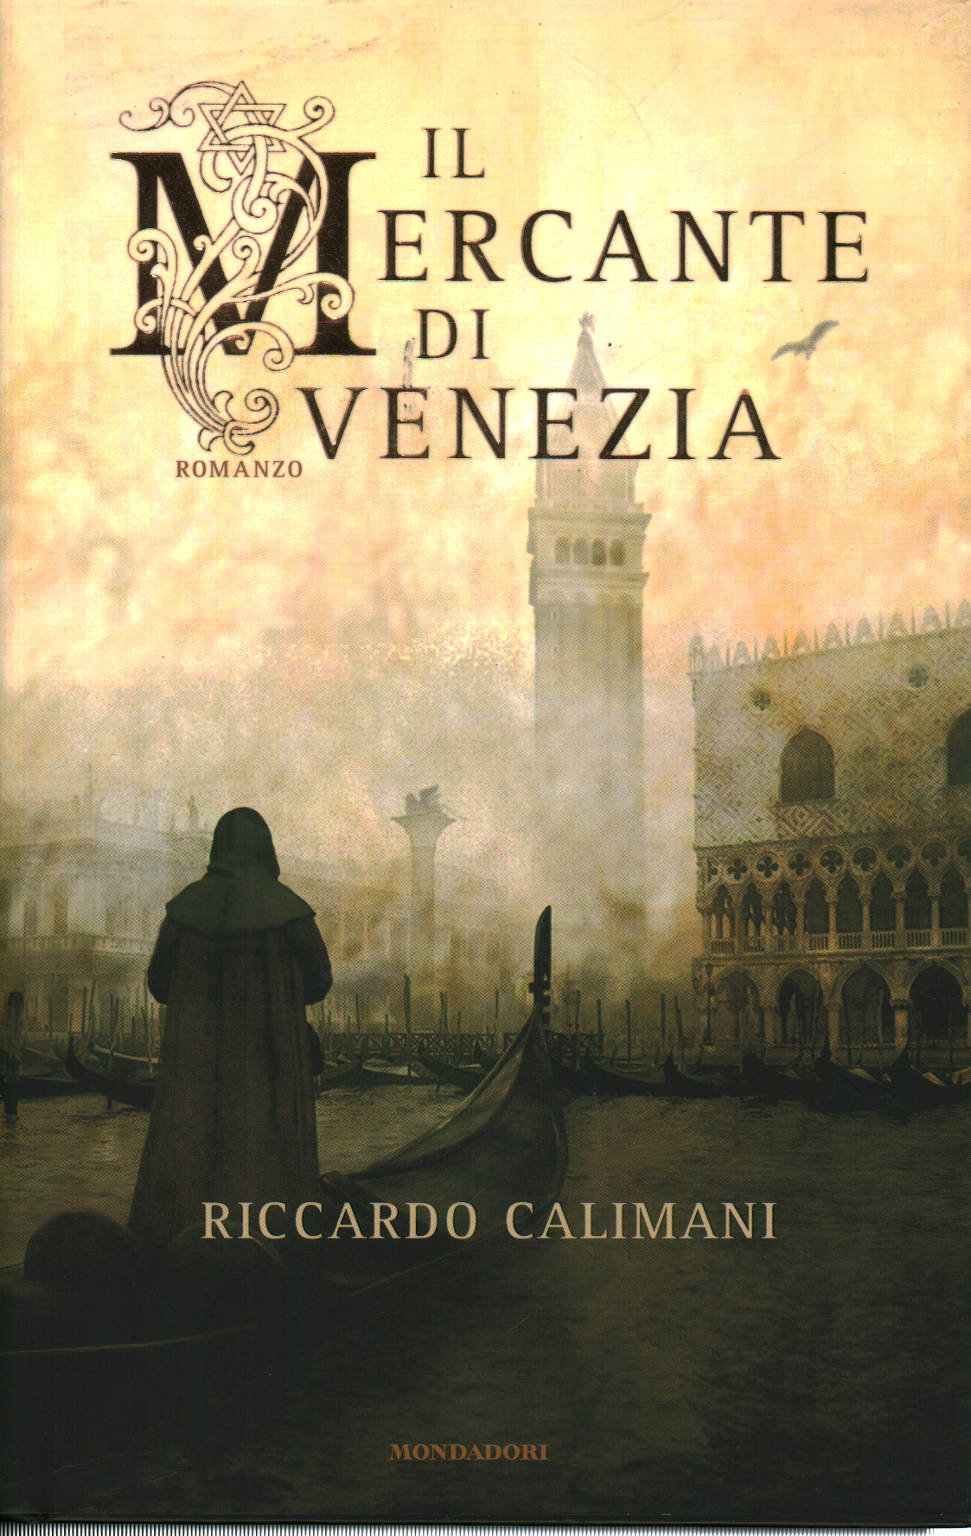 El comerciante de Venecia, Riccardo Calimani